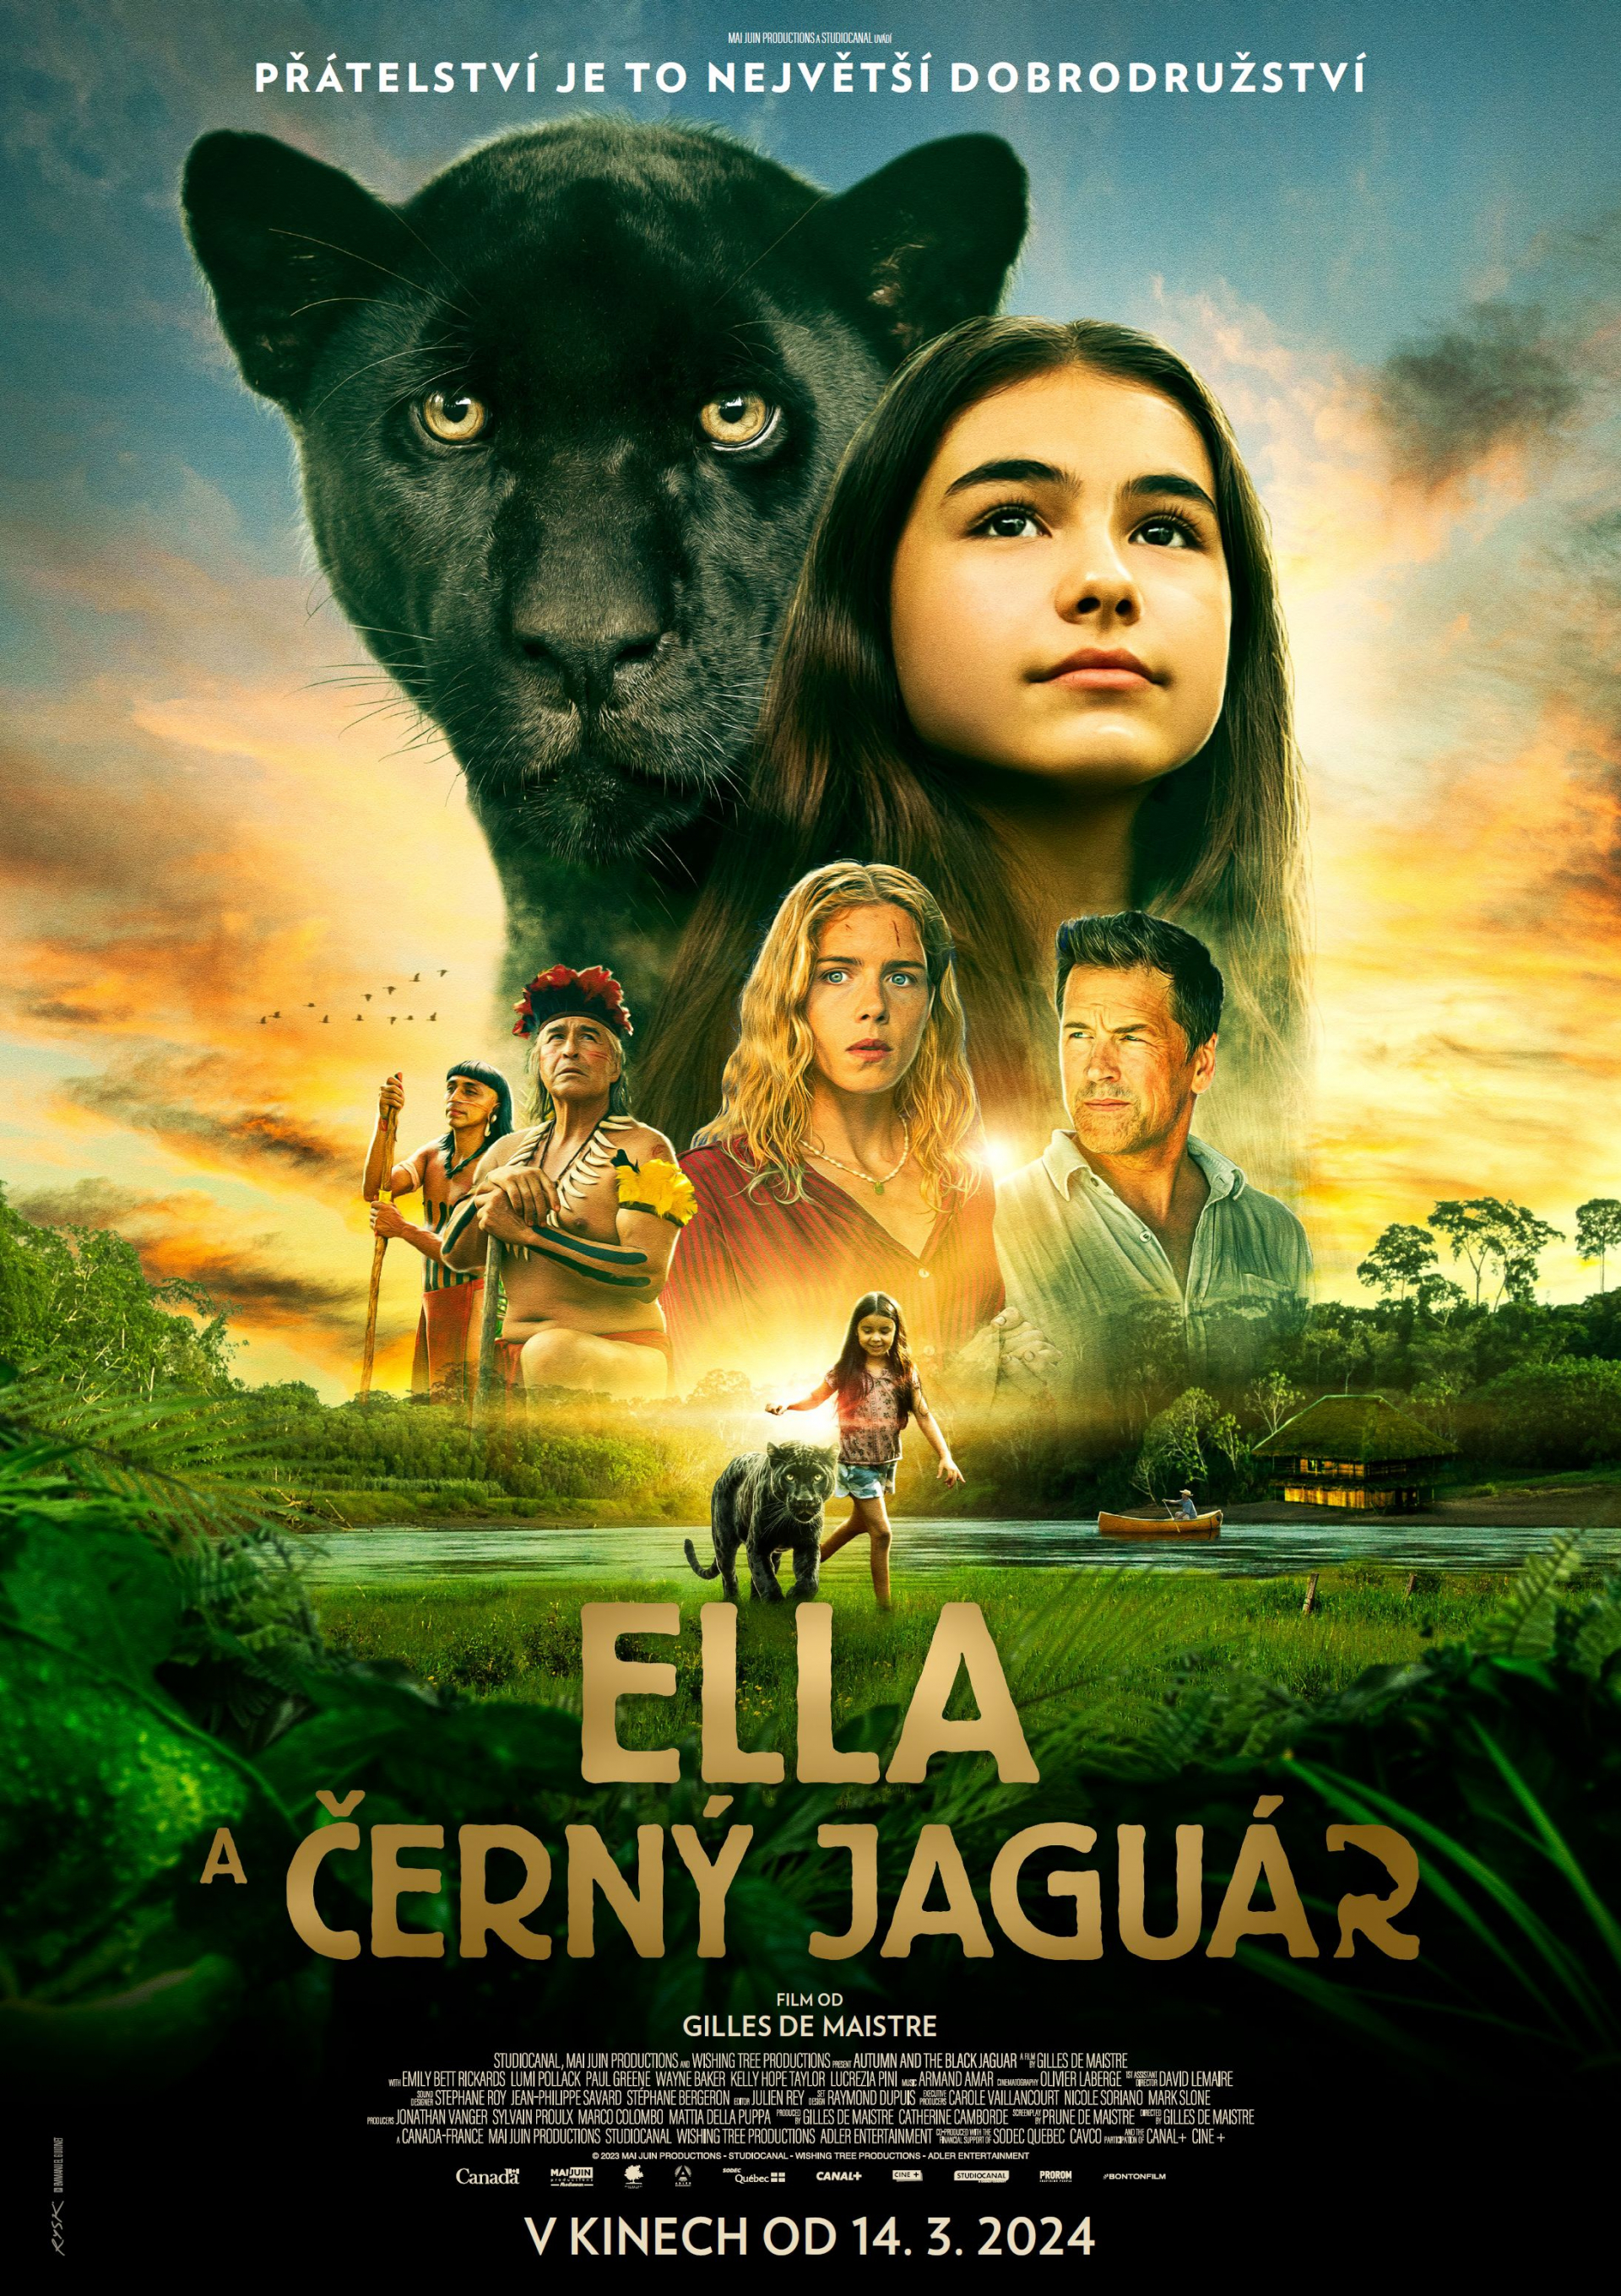 Plakát Ella a černý jaguár